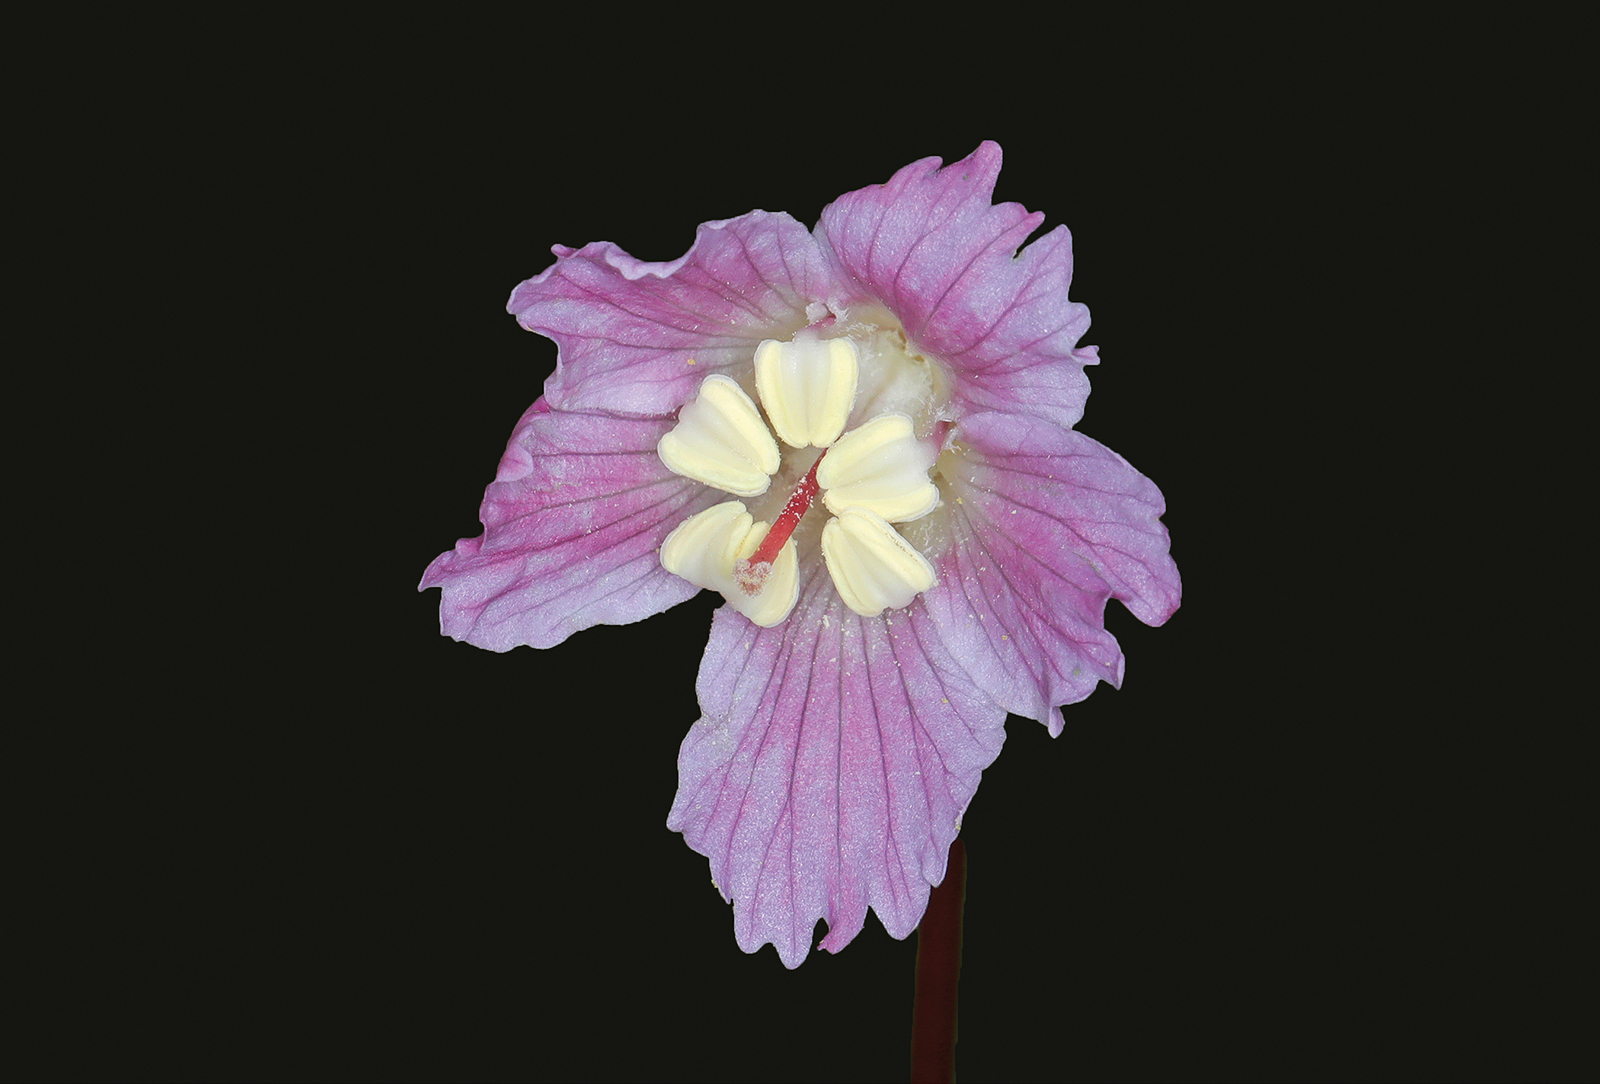 highlands nc photographer greg clarkson pink flower